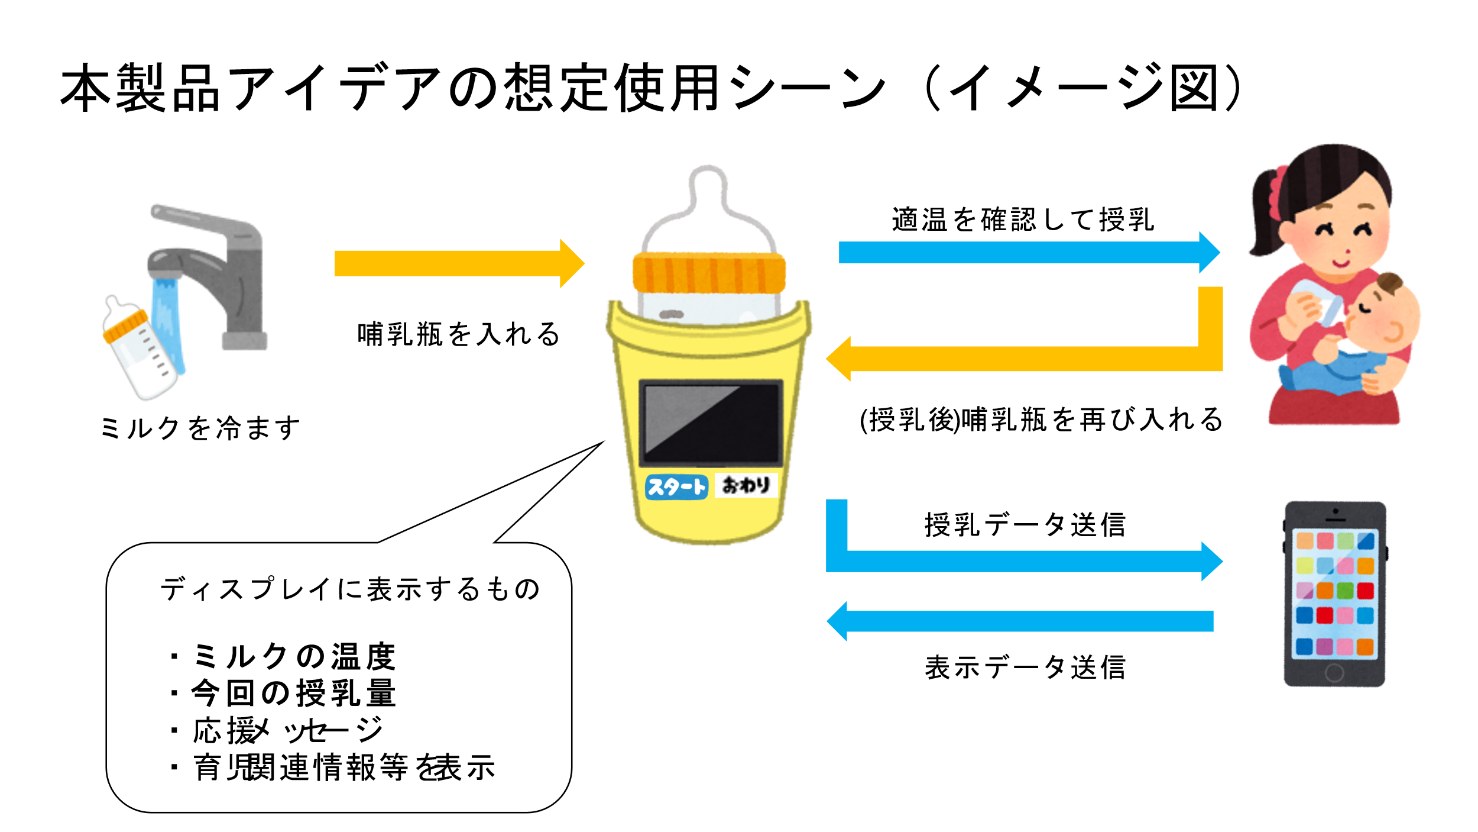 乳幼児向けの哺乳瓶に装着する育児サポートアイテム｢Tapirus Milk｣